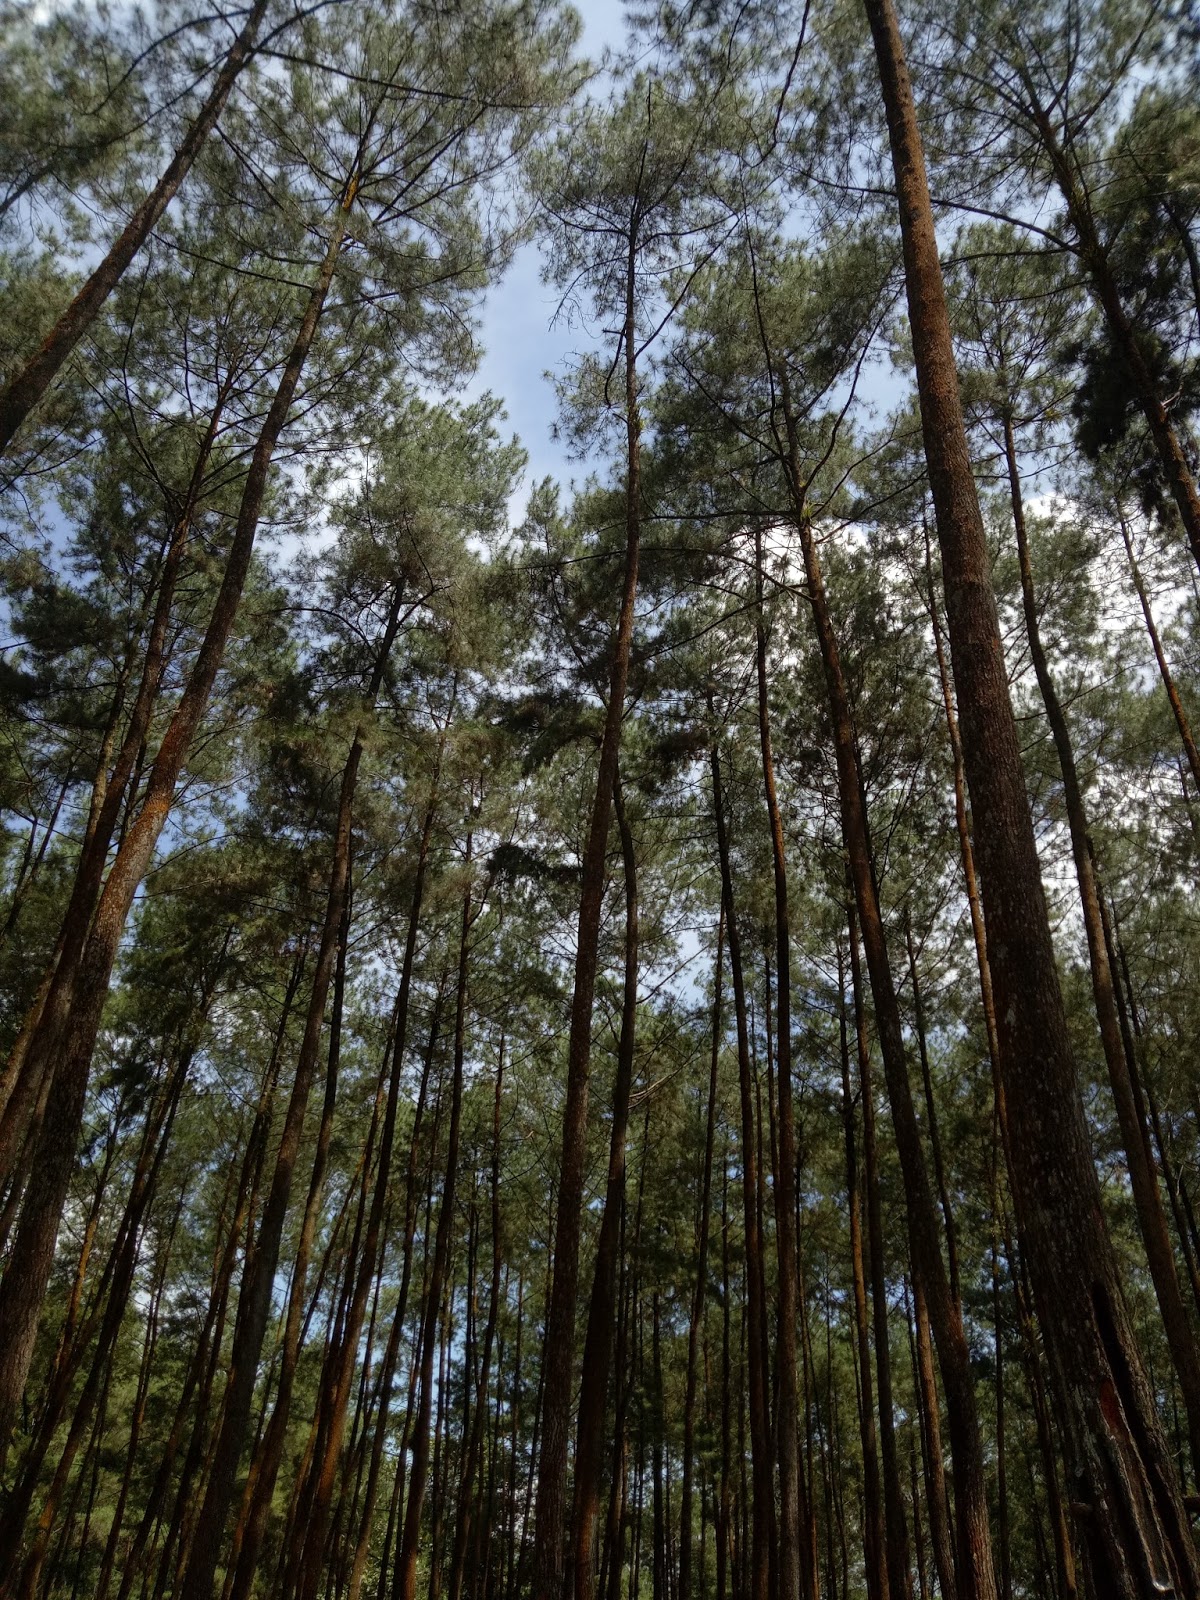  Hutan  Pinus  Pagedongan Tebing Tampomas Banjarnegara 